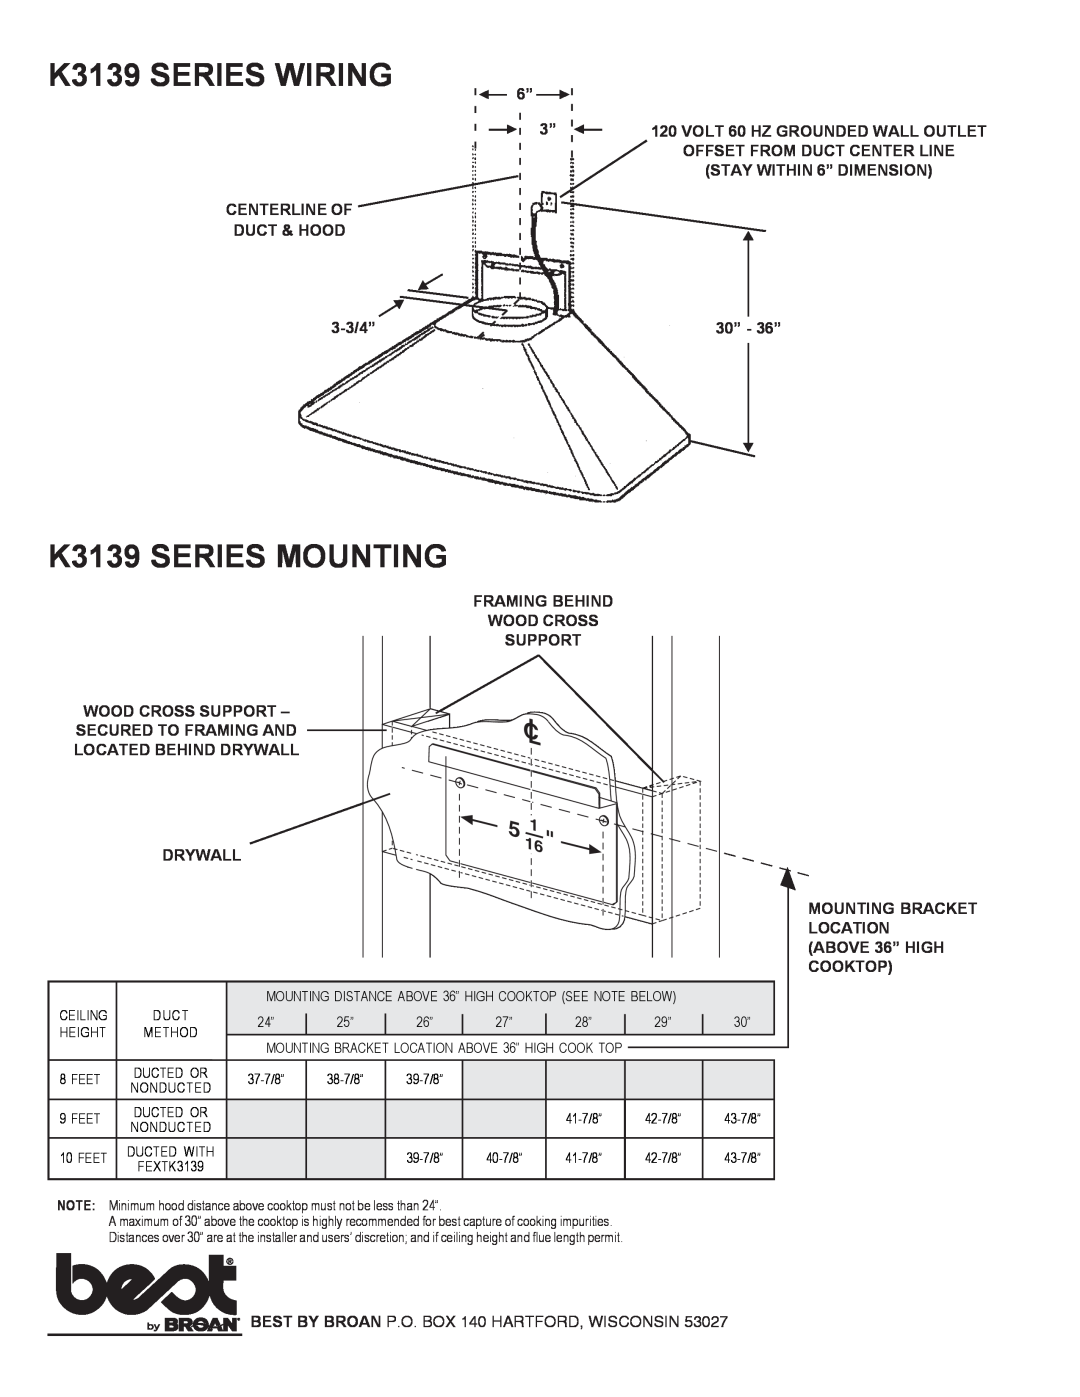 Best K3139 Series specifications K3139 SERIES WIRING, K3139 SERIES MOUNTING 